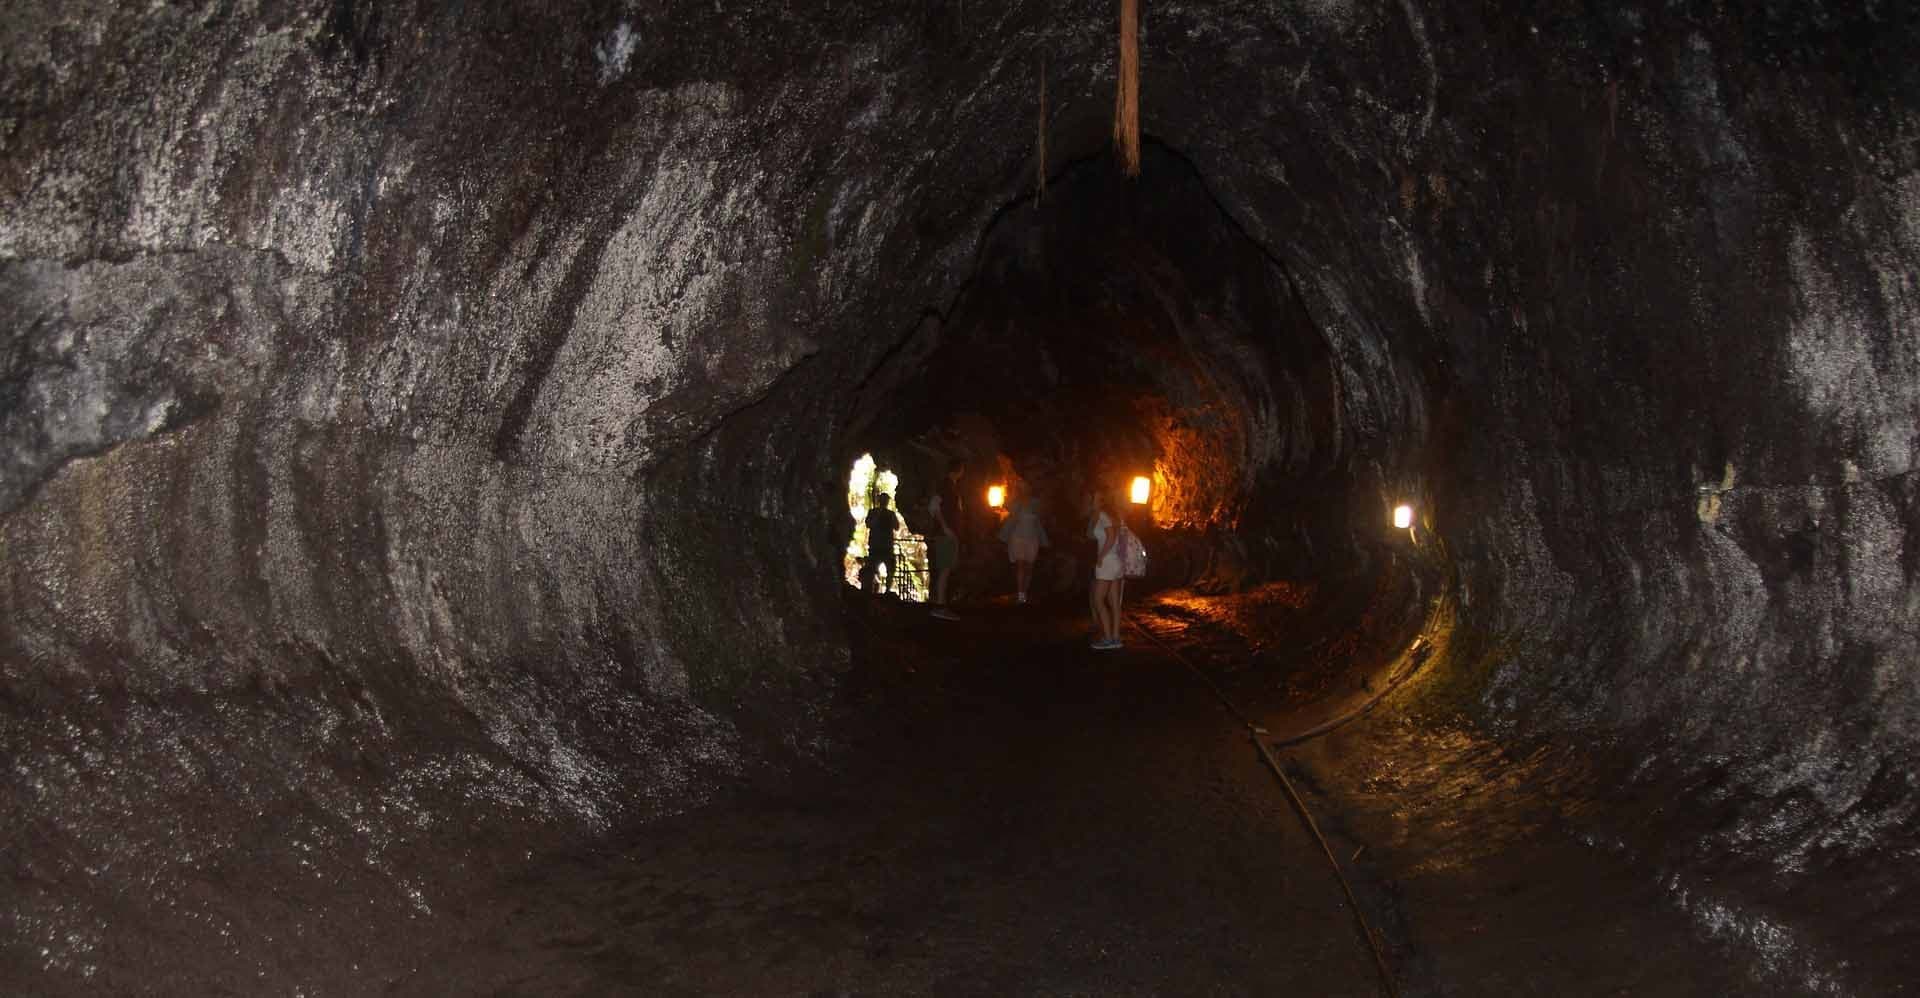 Lava tunnel